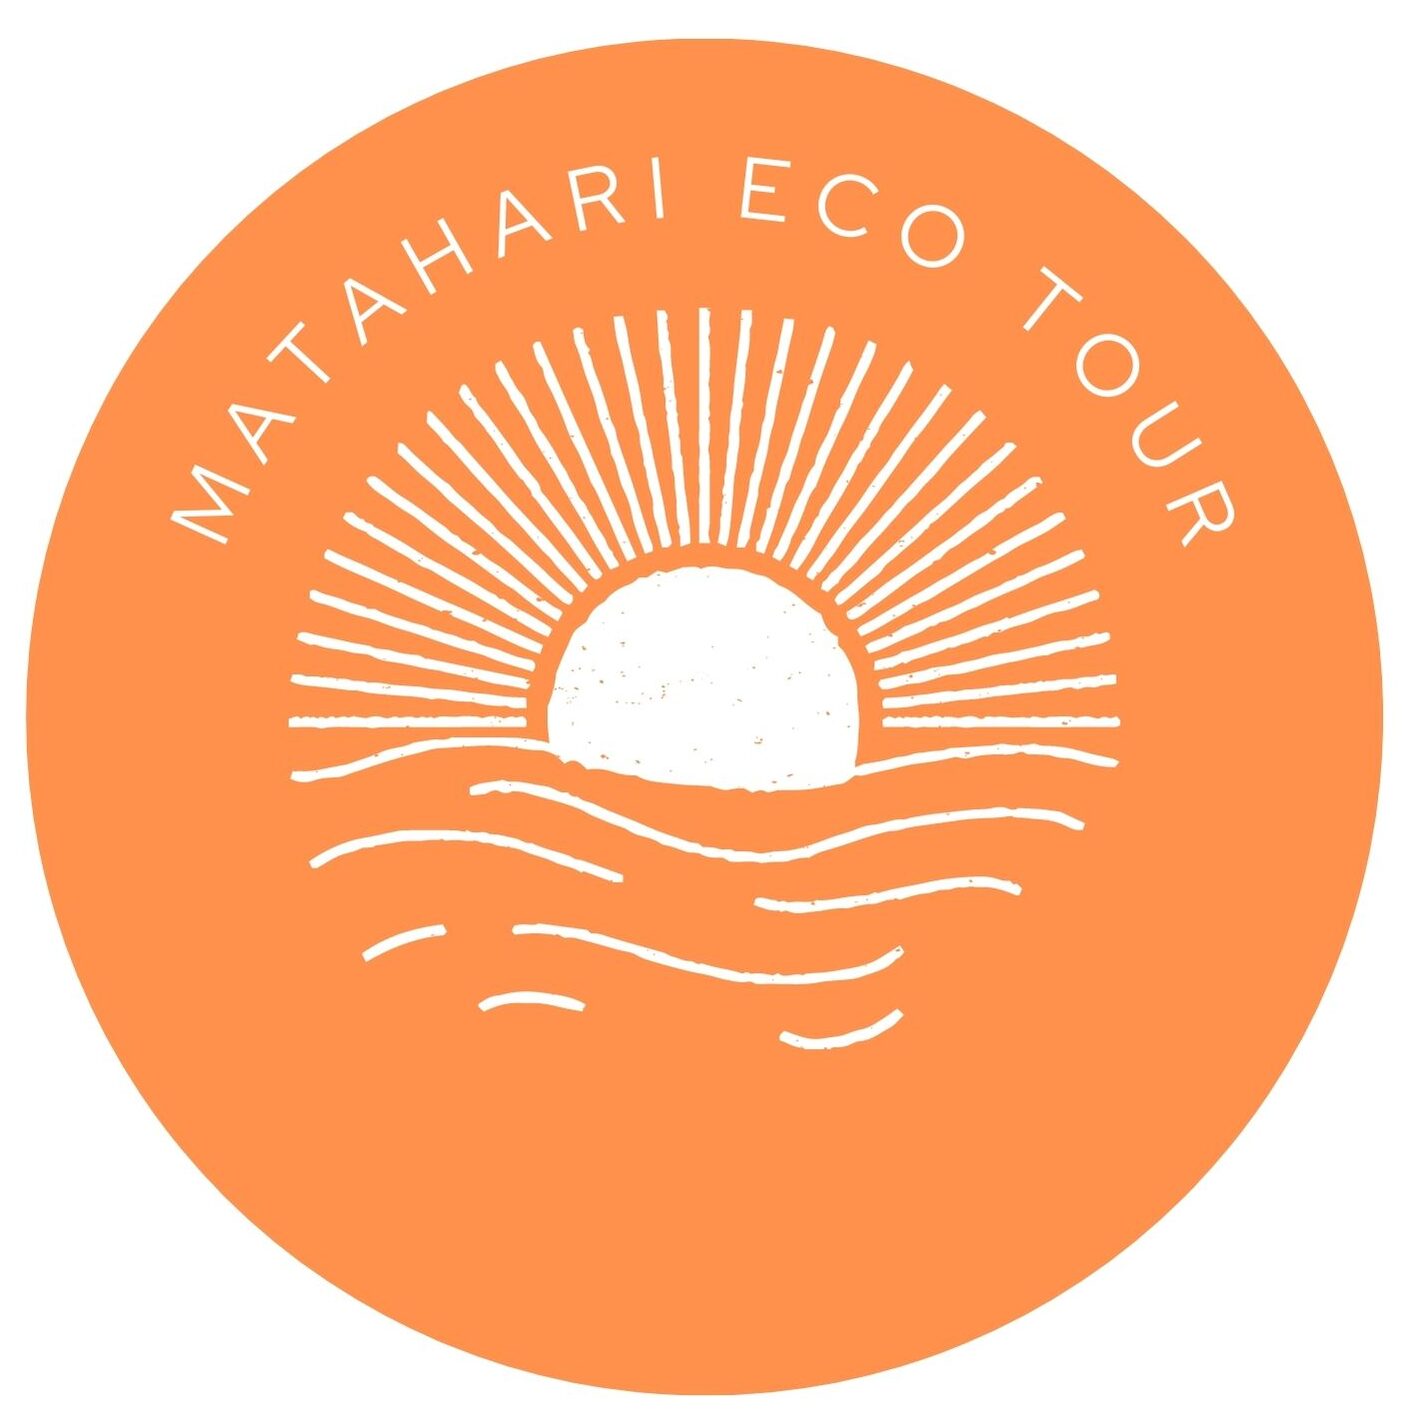 Matahari Eco Tour